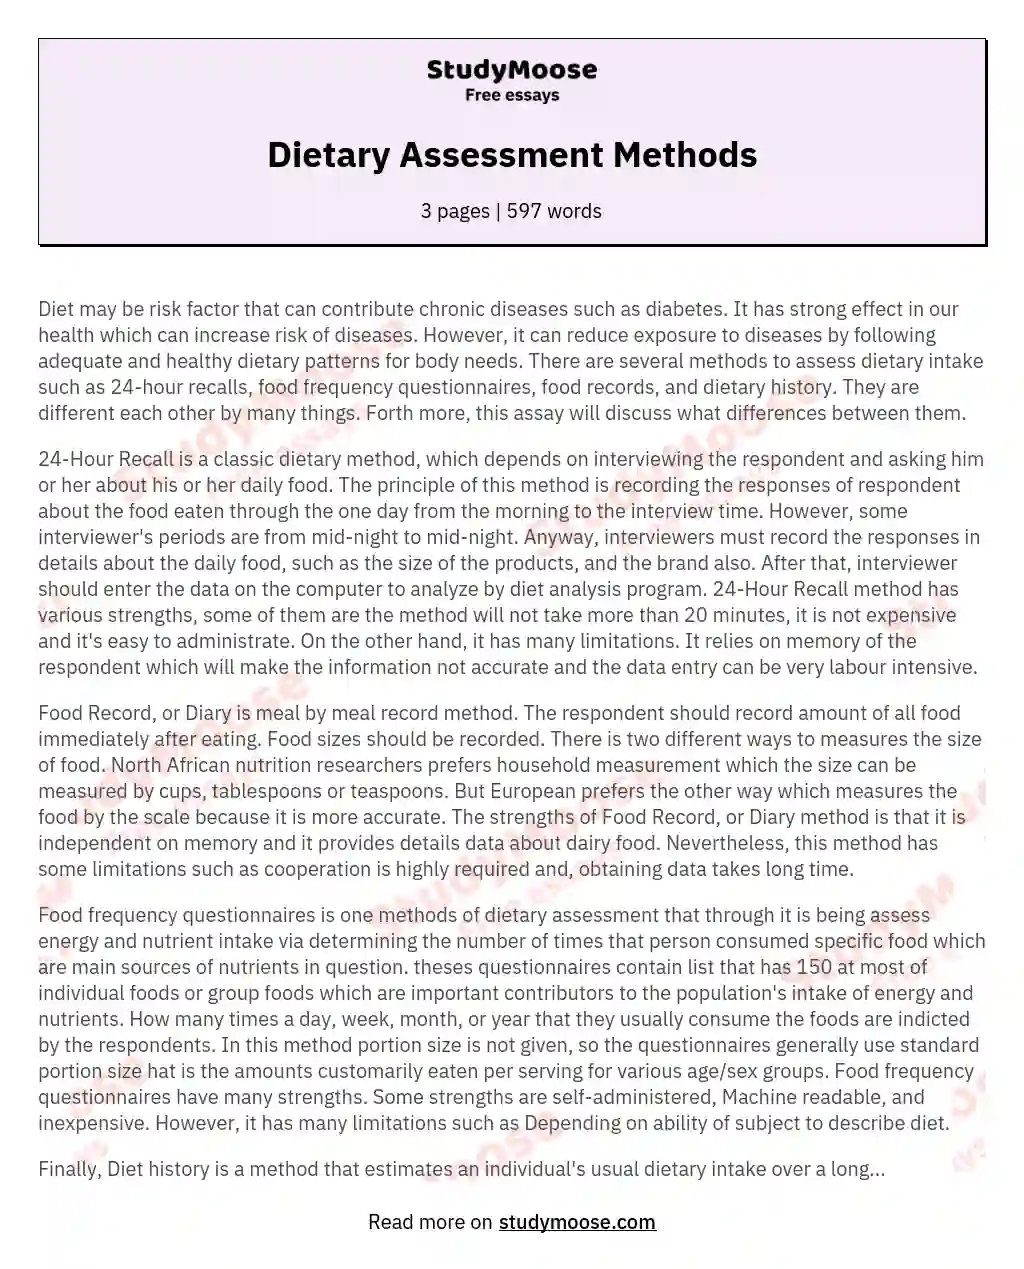 Dietary Assessment Methods essay